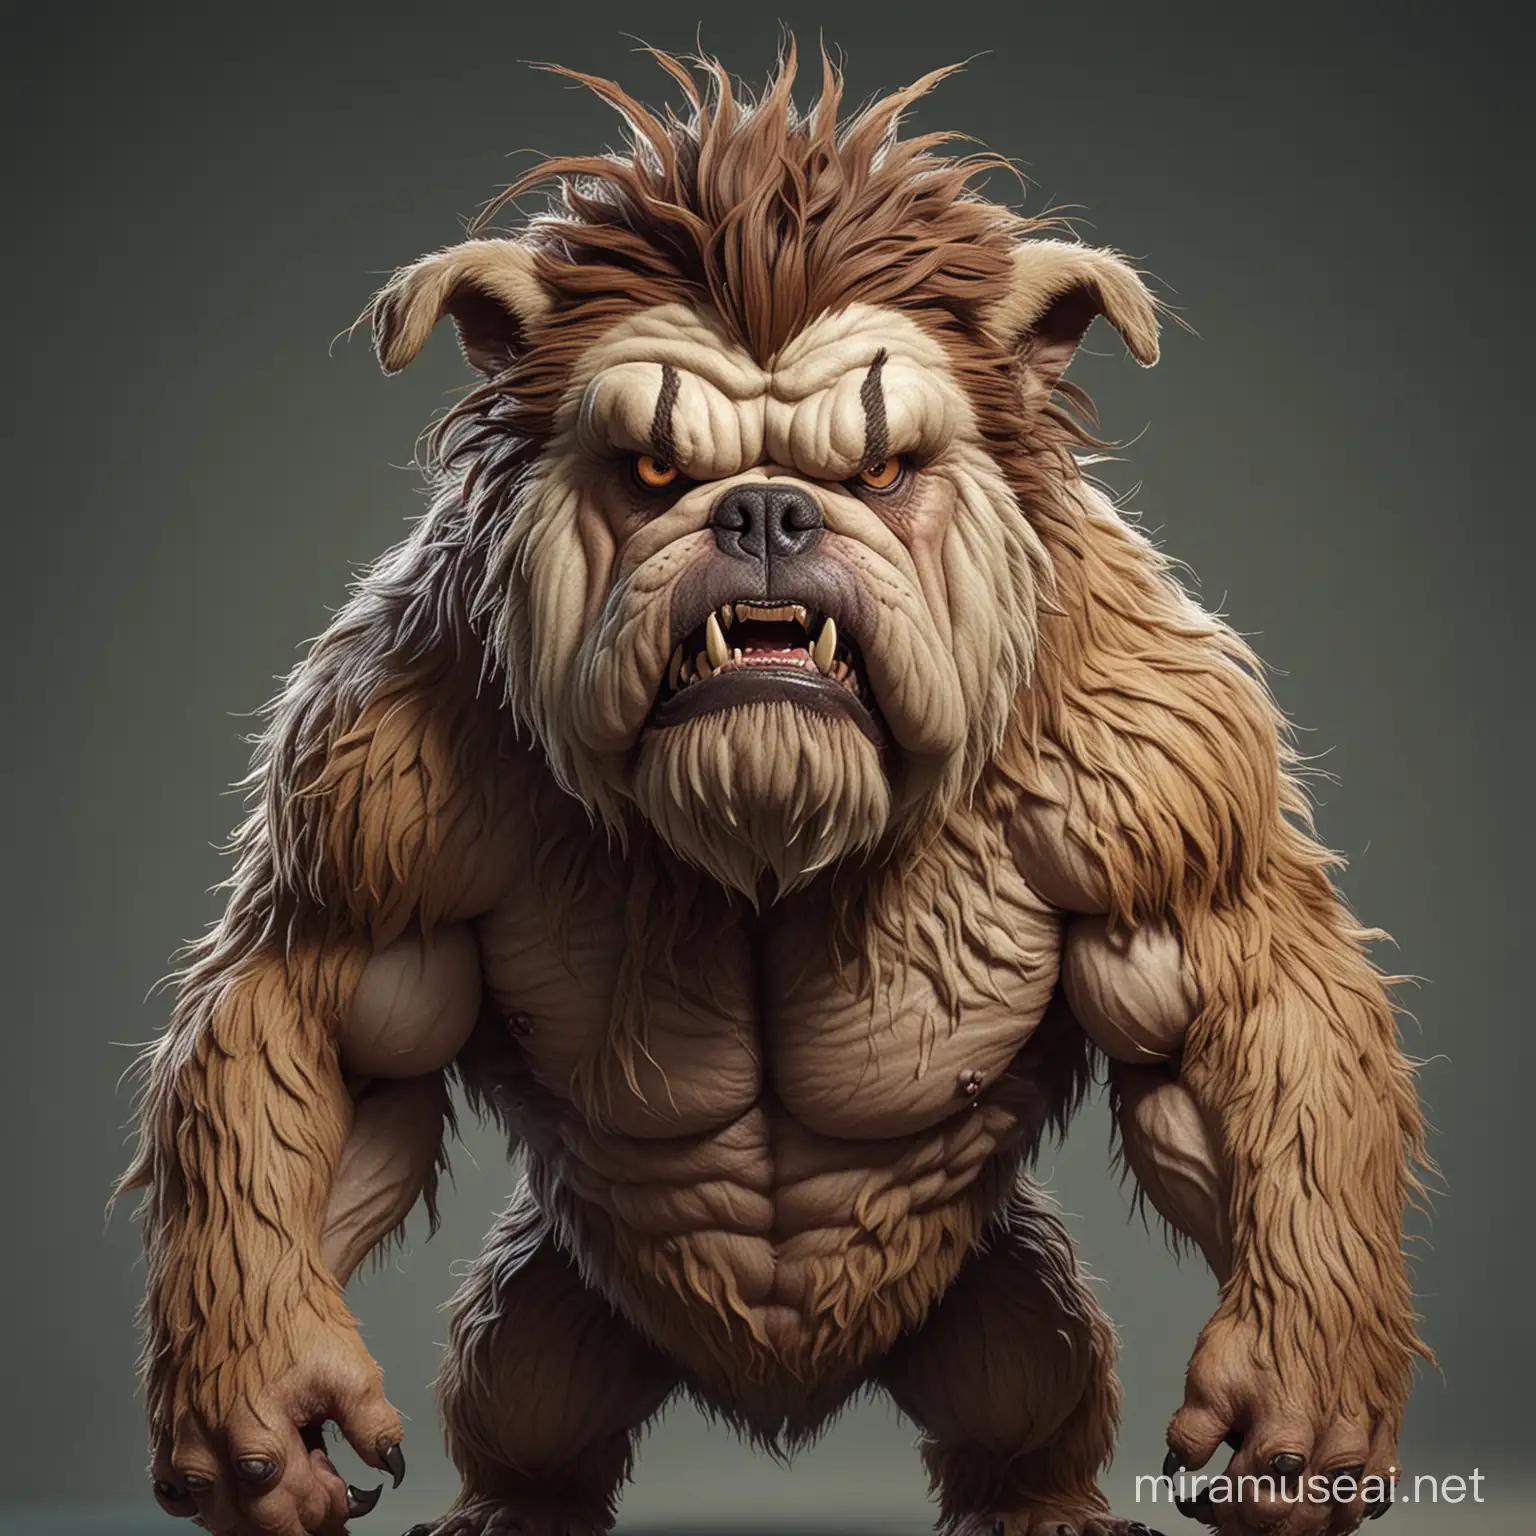 Fierce Mutated Bulldog Monster Concept Art